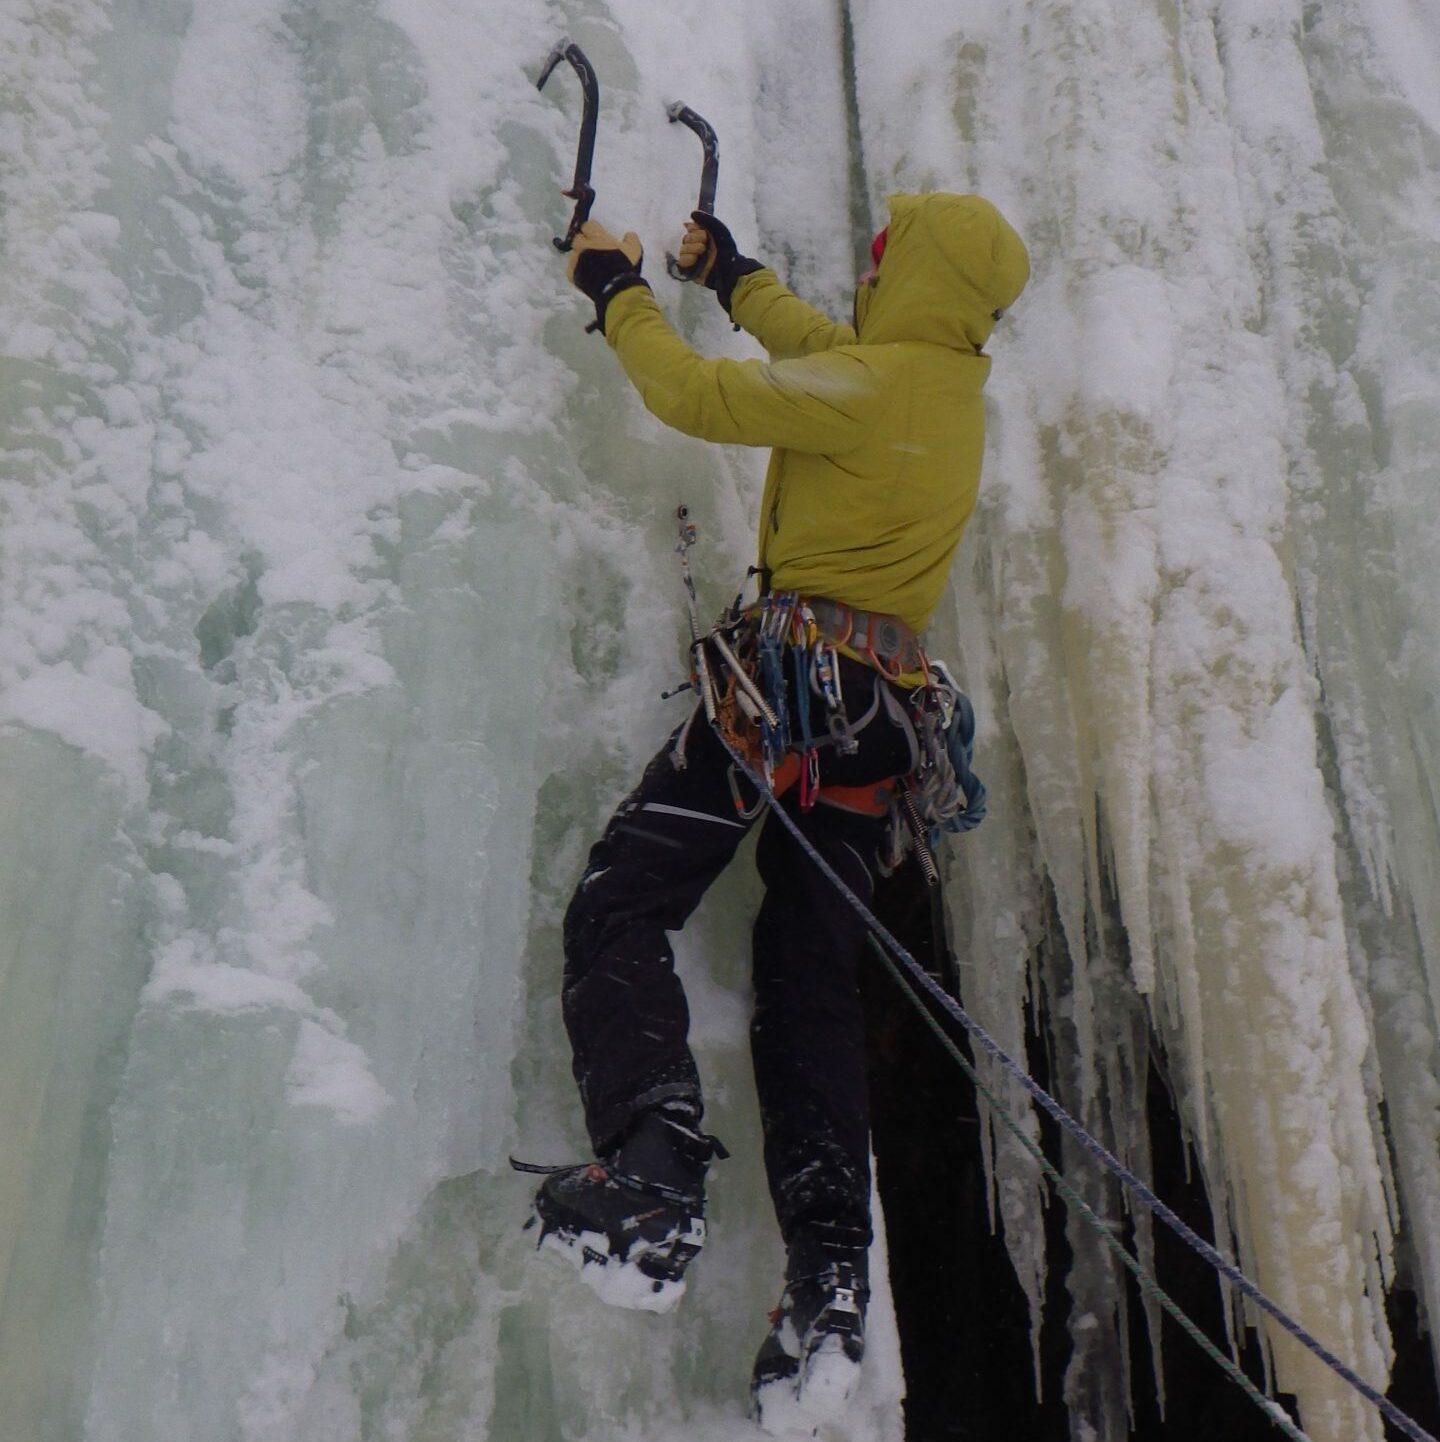 Ice climbing in Rjukan, Norway